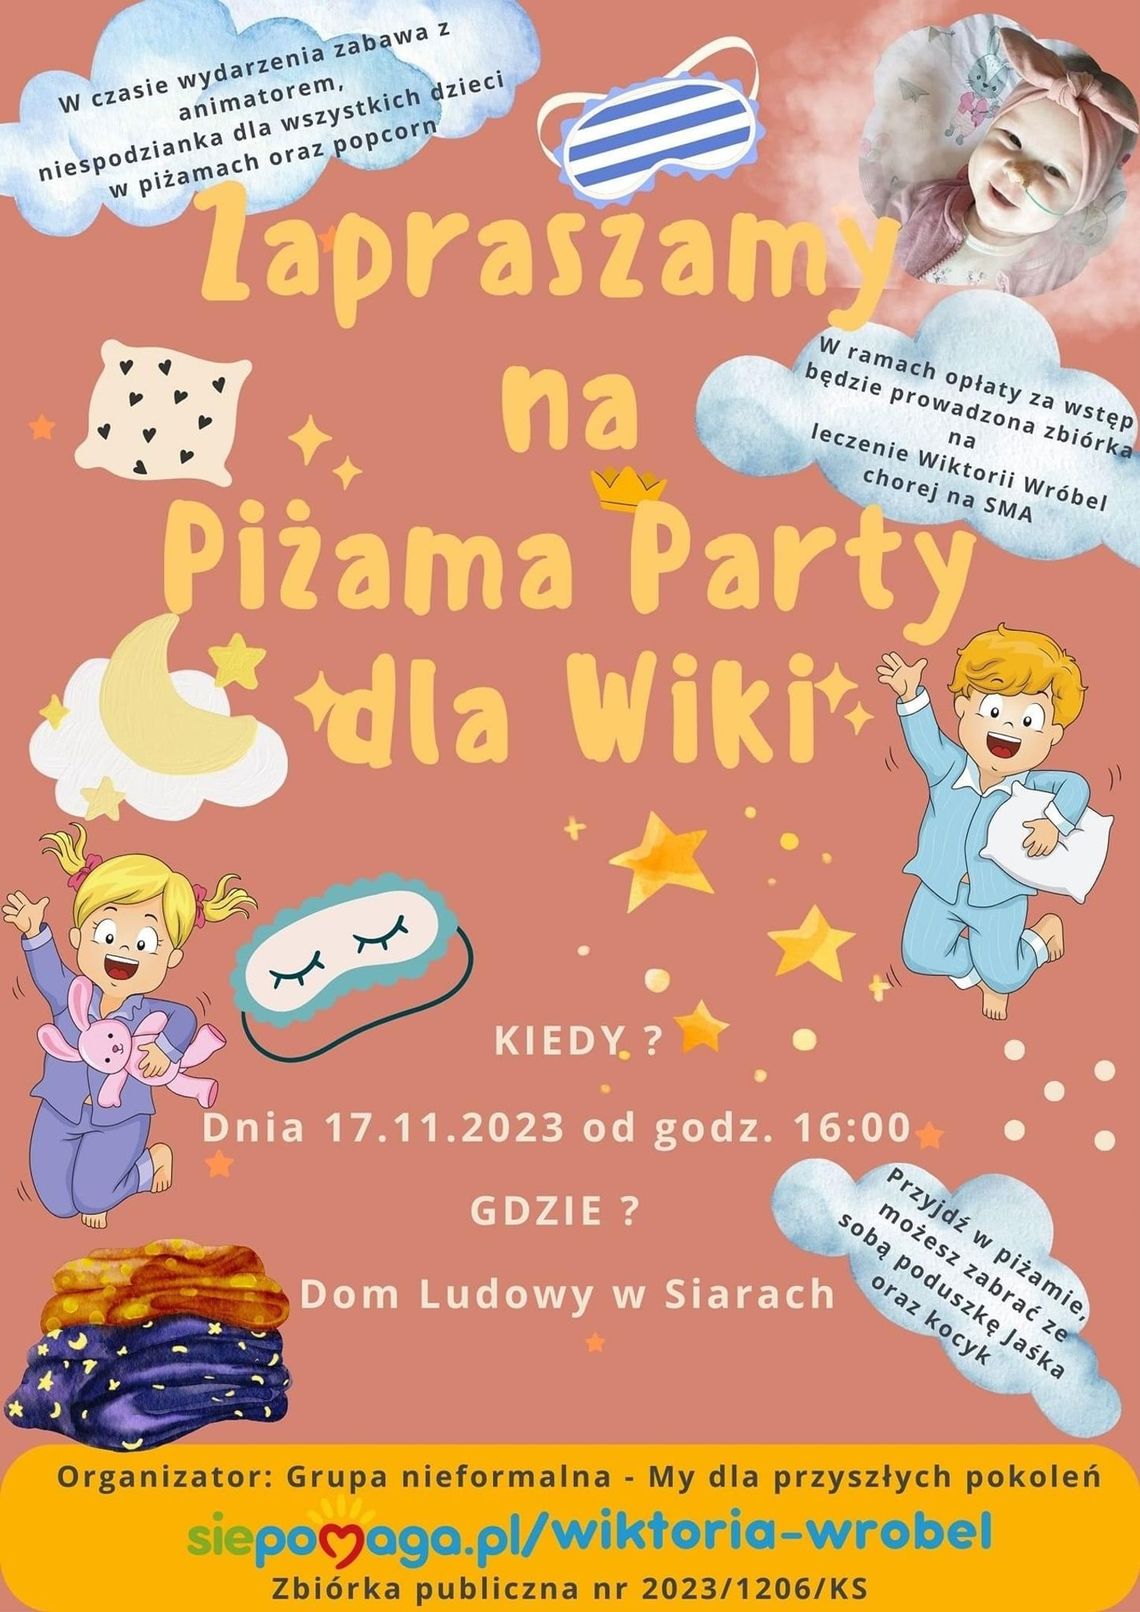 Piżama Party dla Wiki w Siarach | halogorlice.info